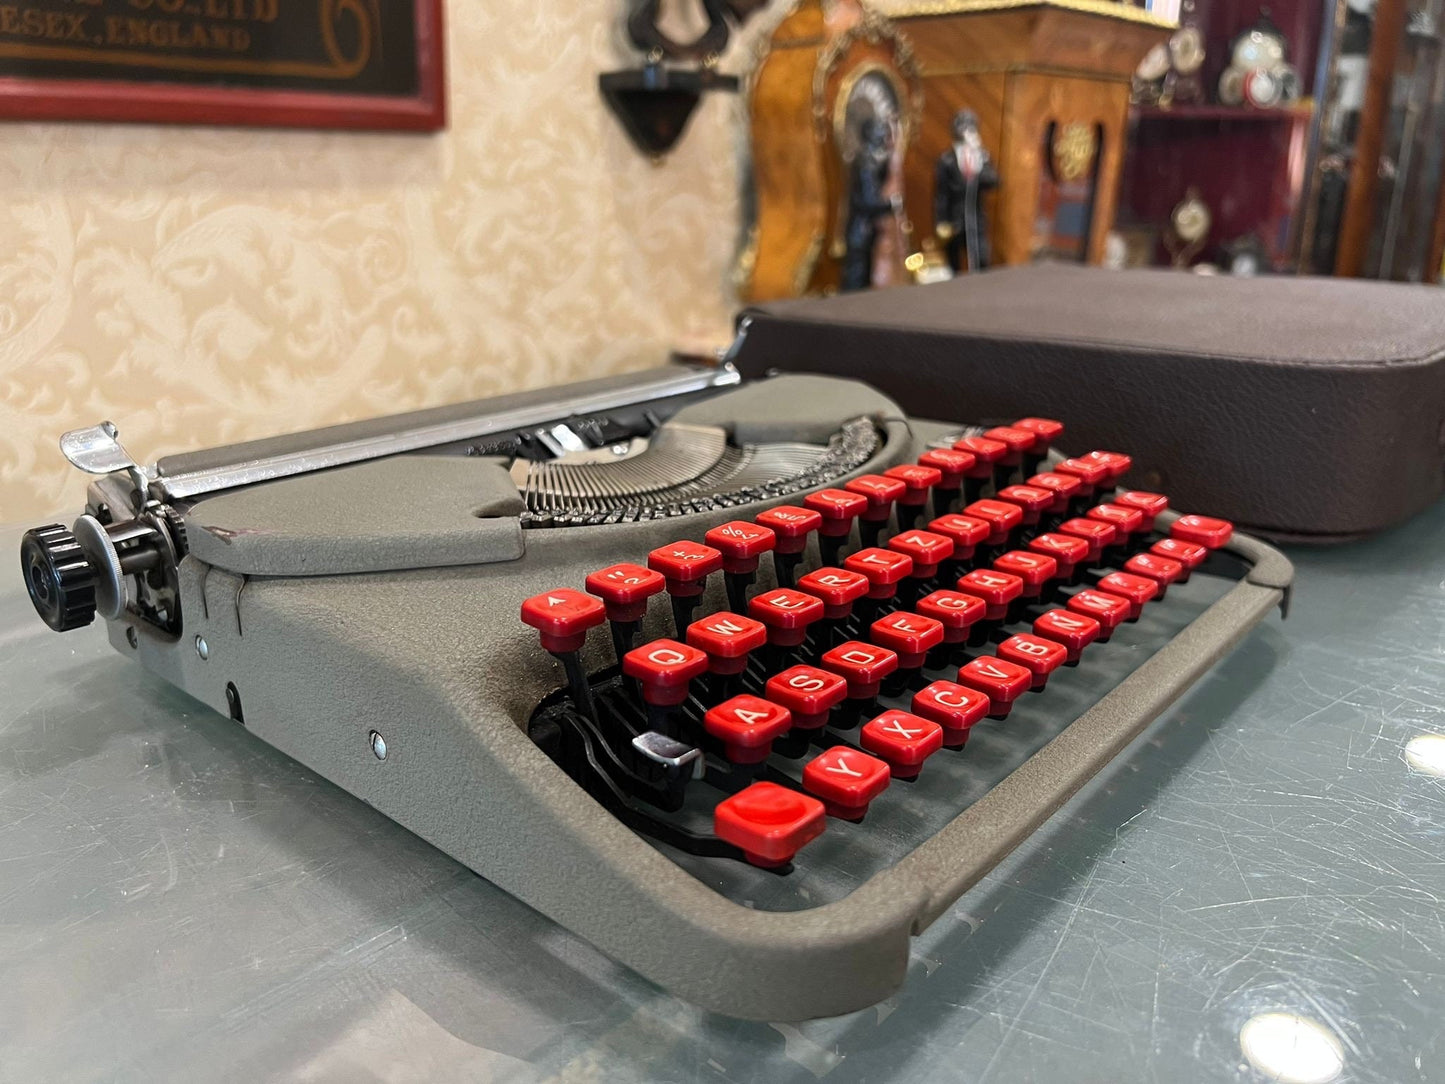 Vintage Groma Typewriter - Red Keyboard, A Timeless Classic - Slim Case,Rare Model,typewriter working